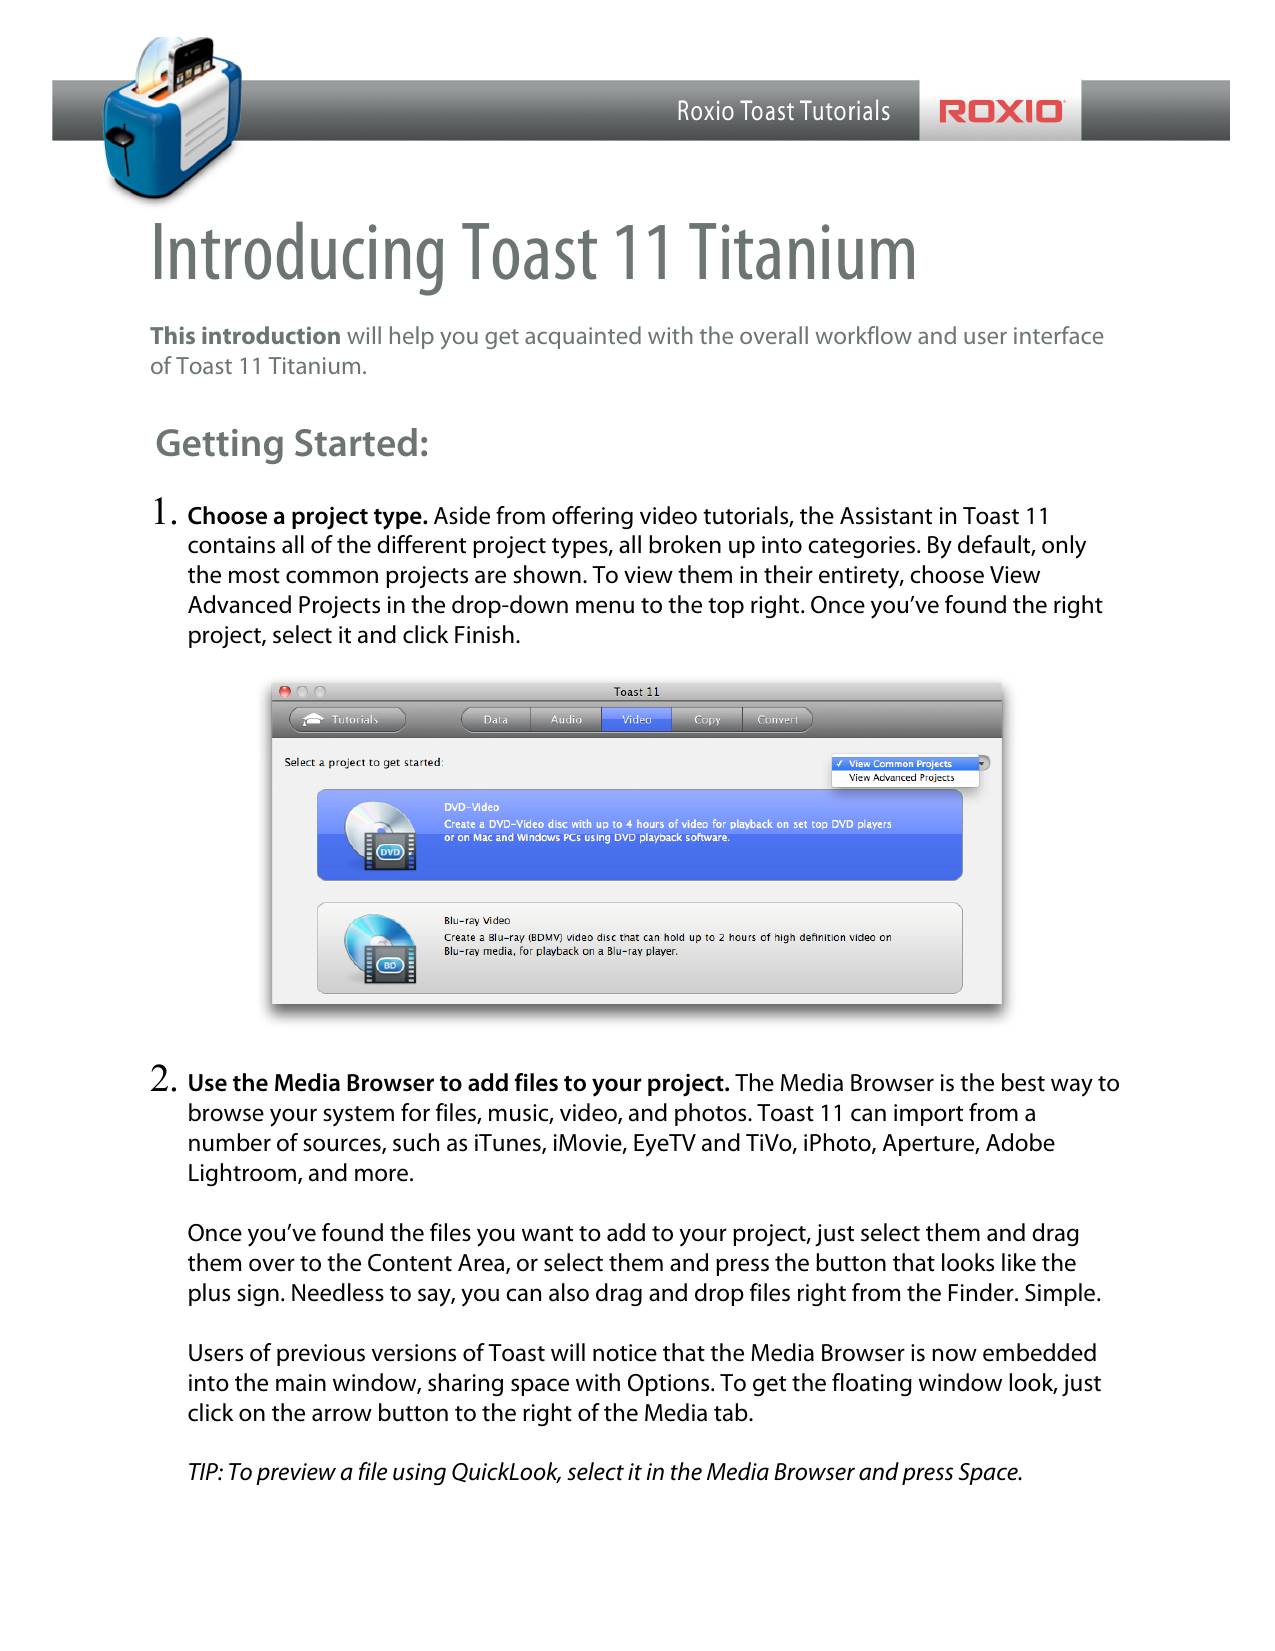 toast 10 titanium tutorial